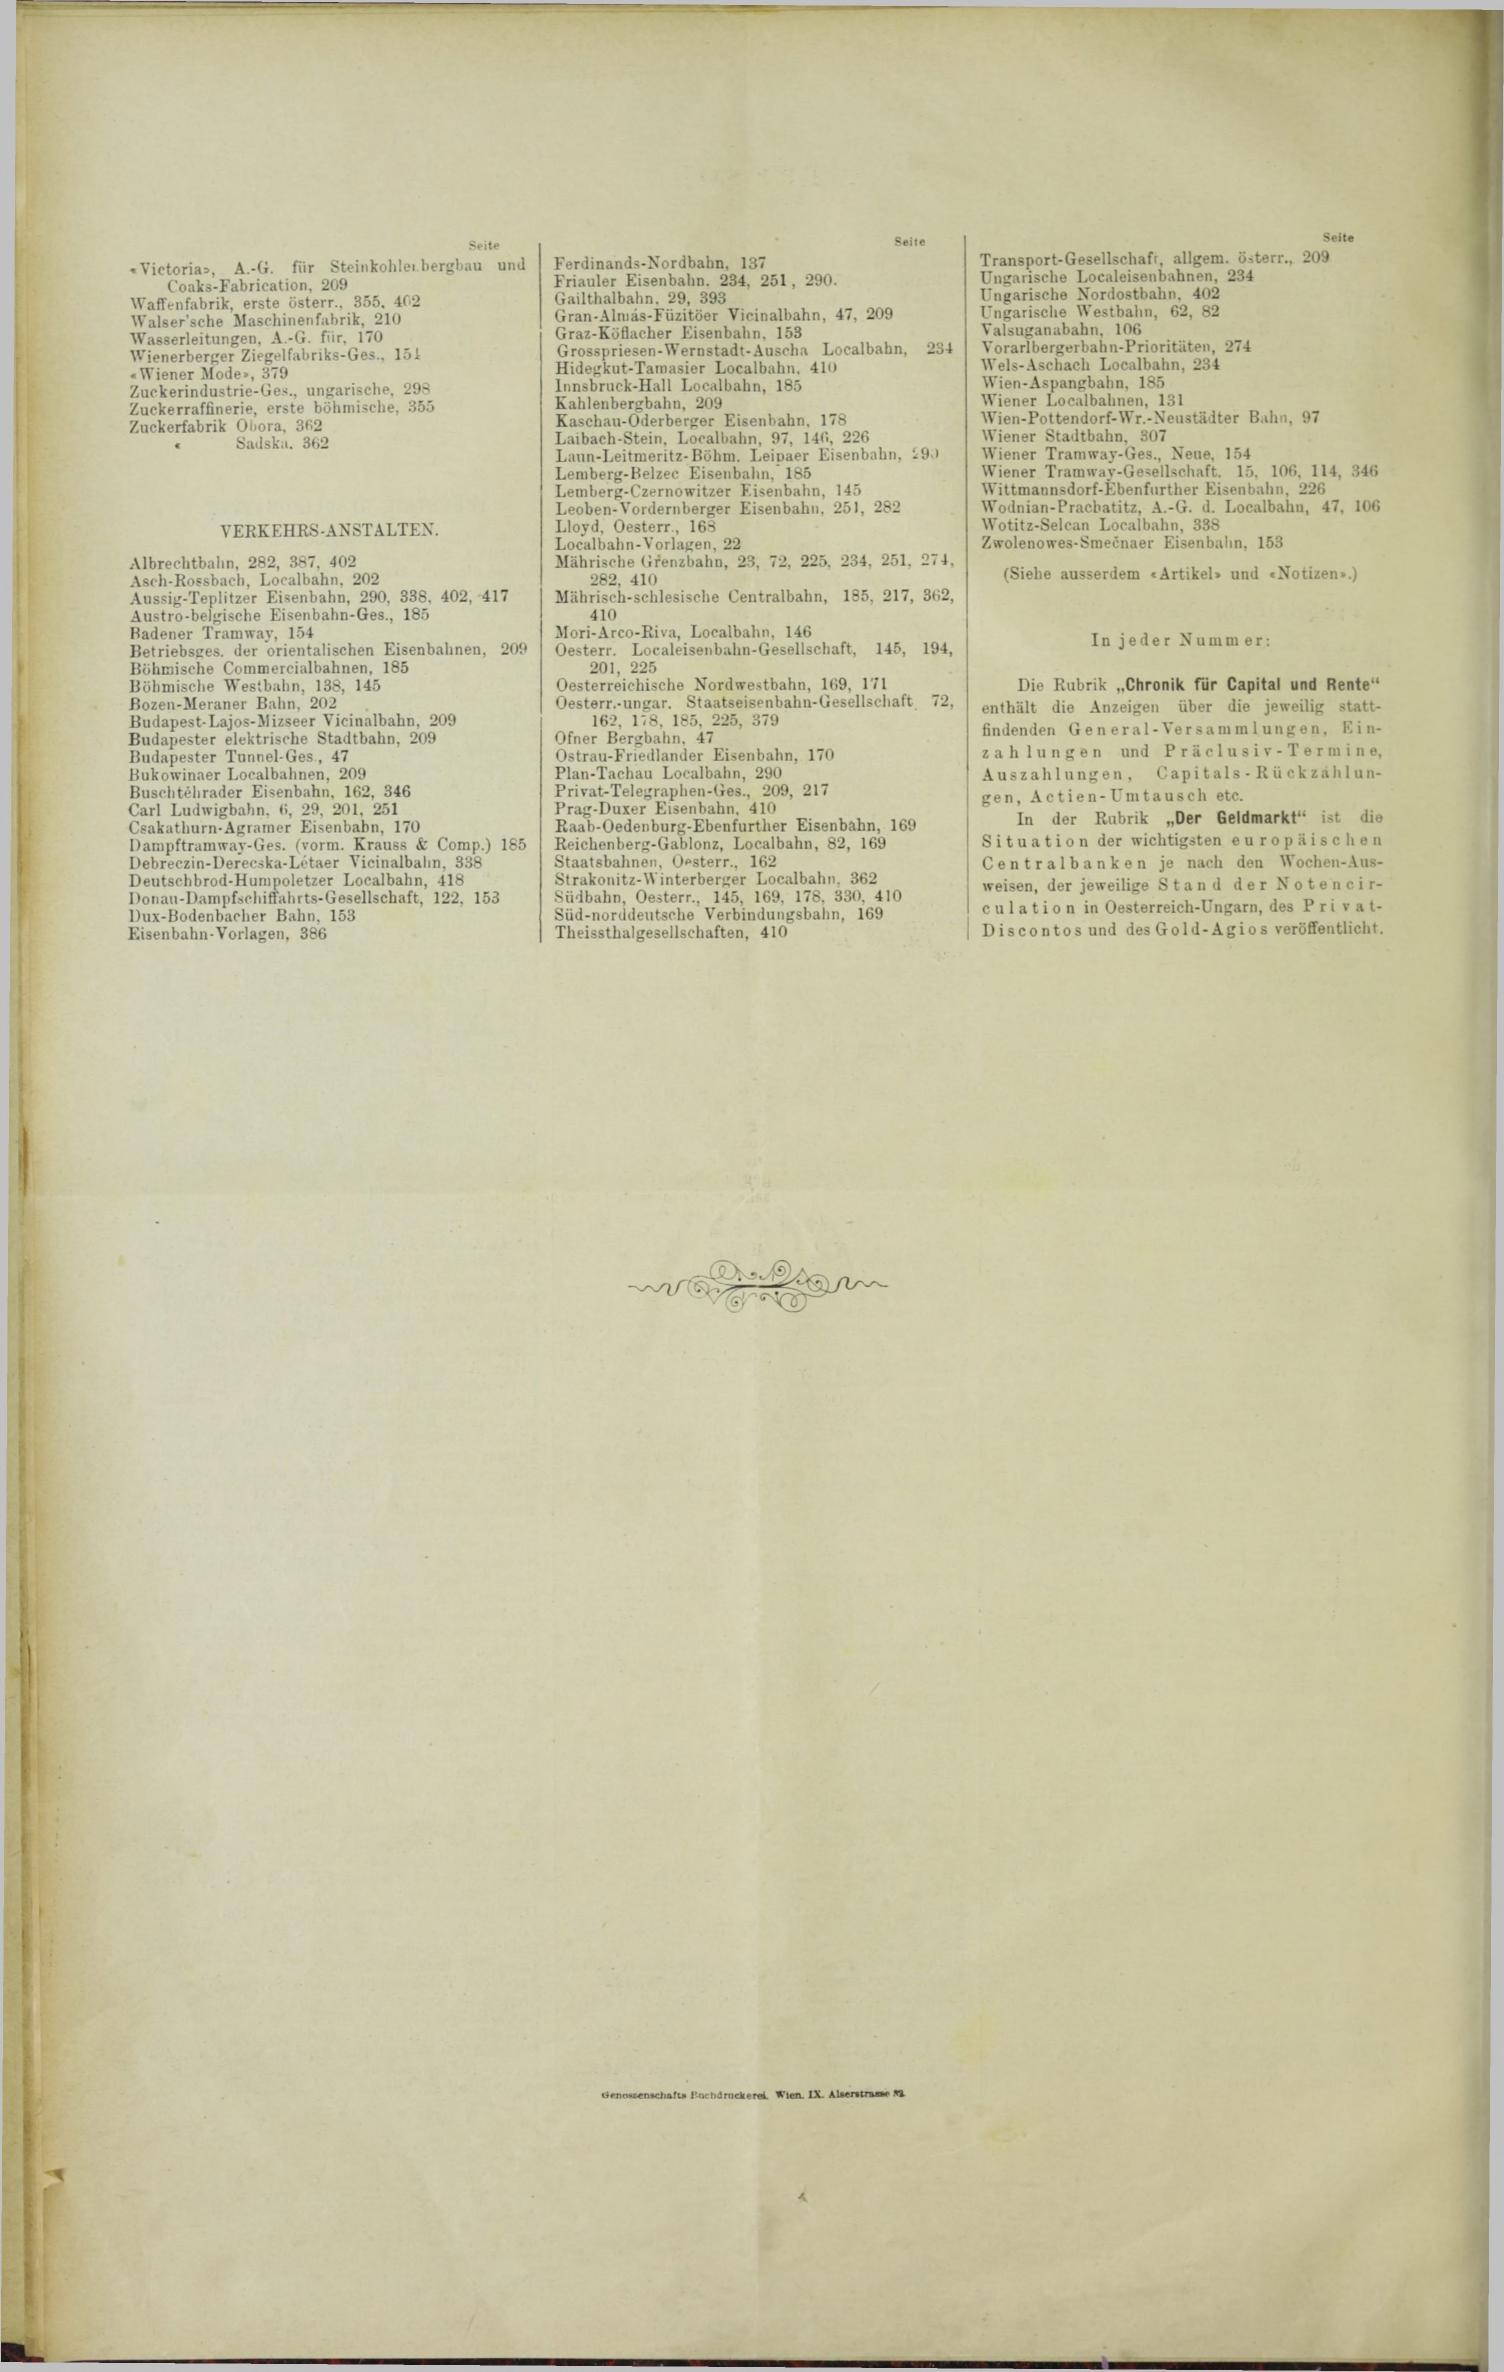 Der Tresor 26.01.1893 - Seite 14